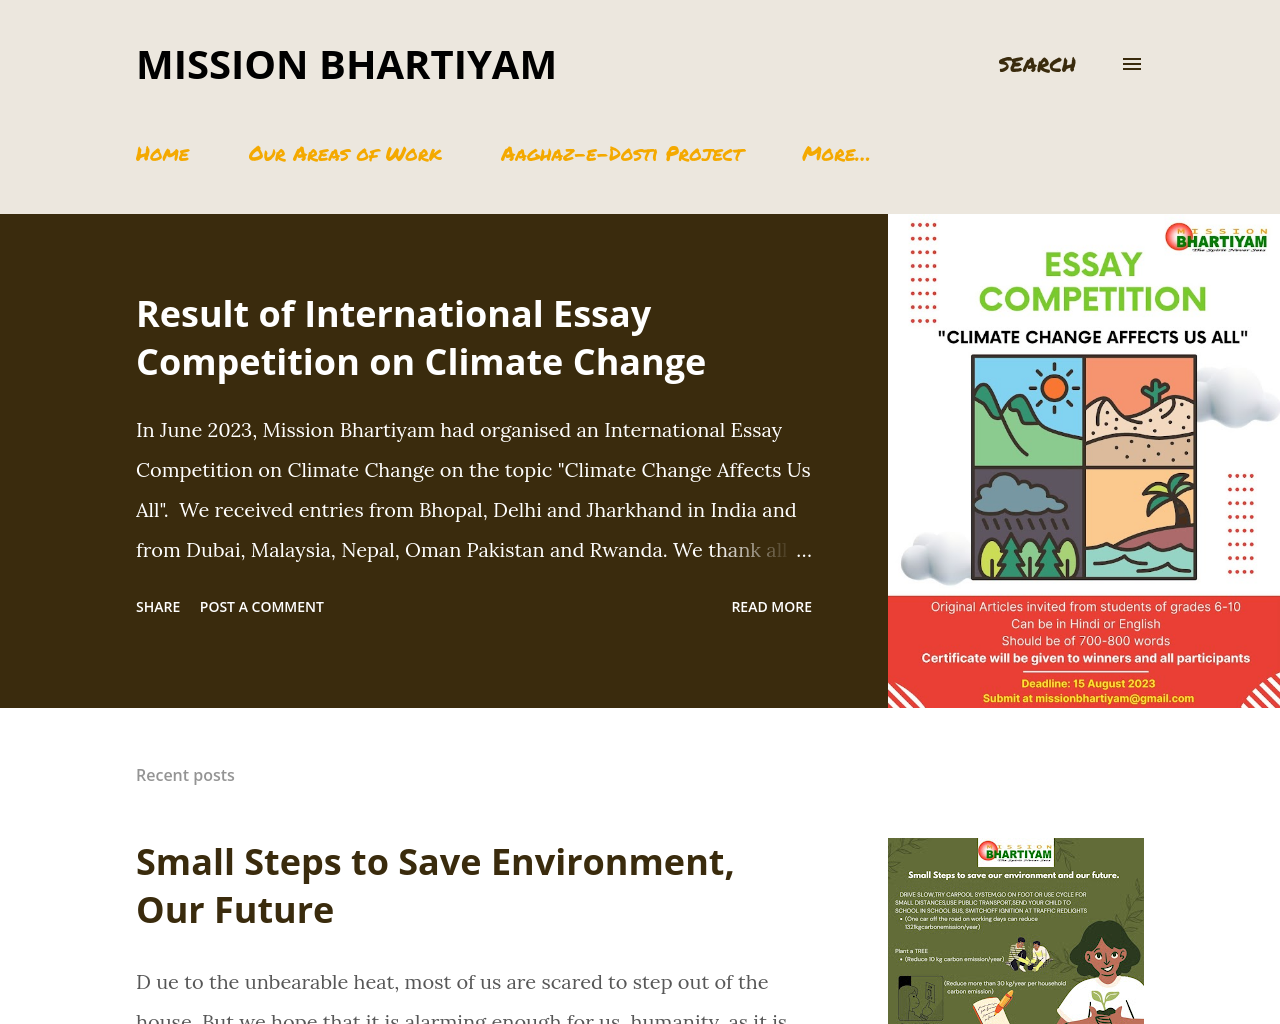 Mission Bhartiyam